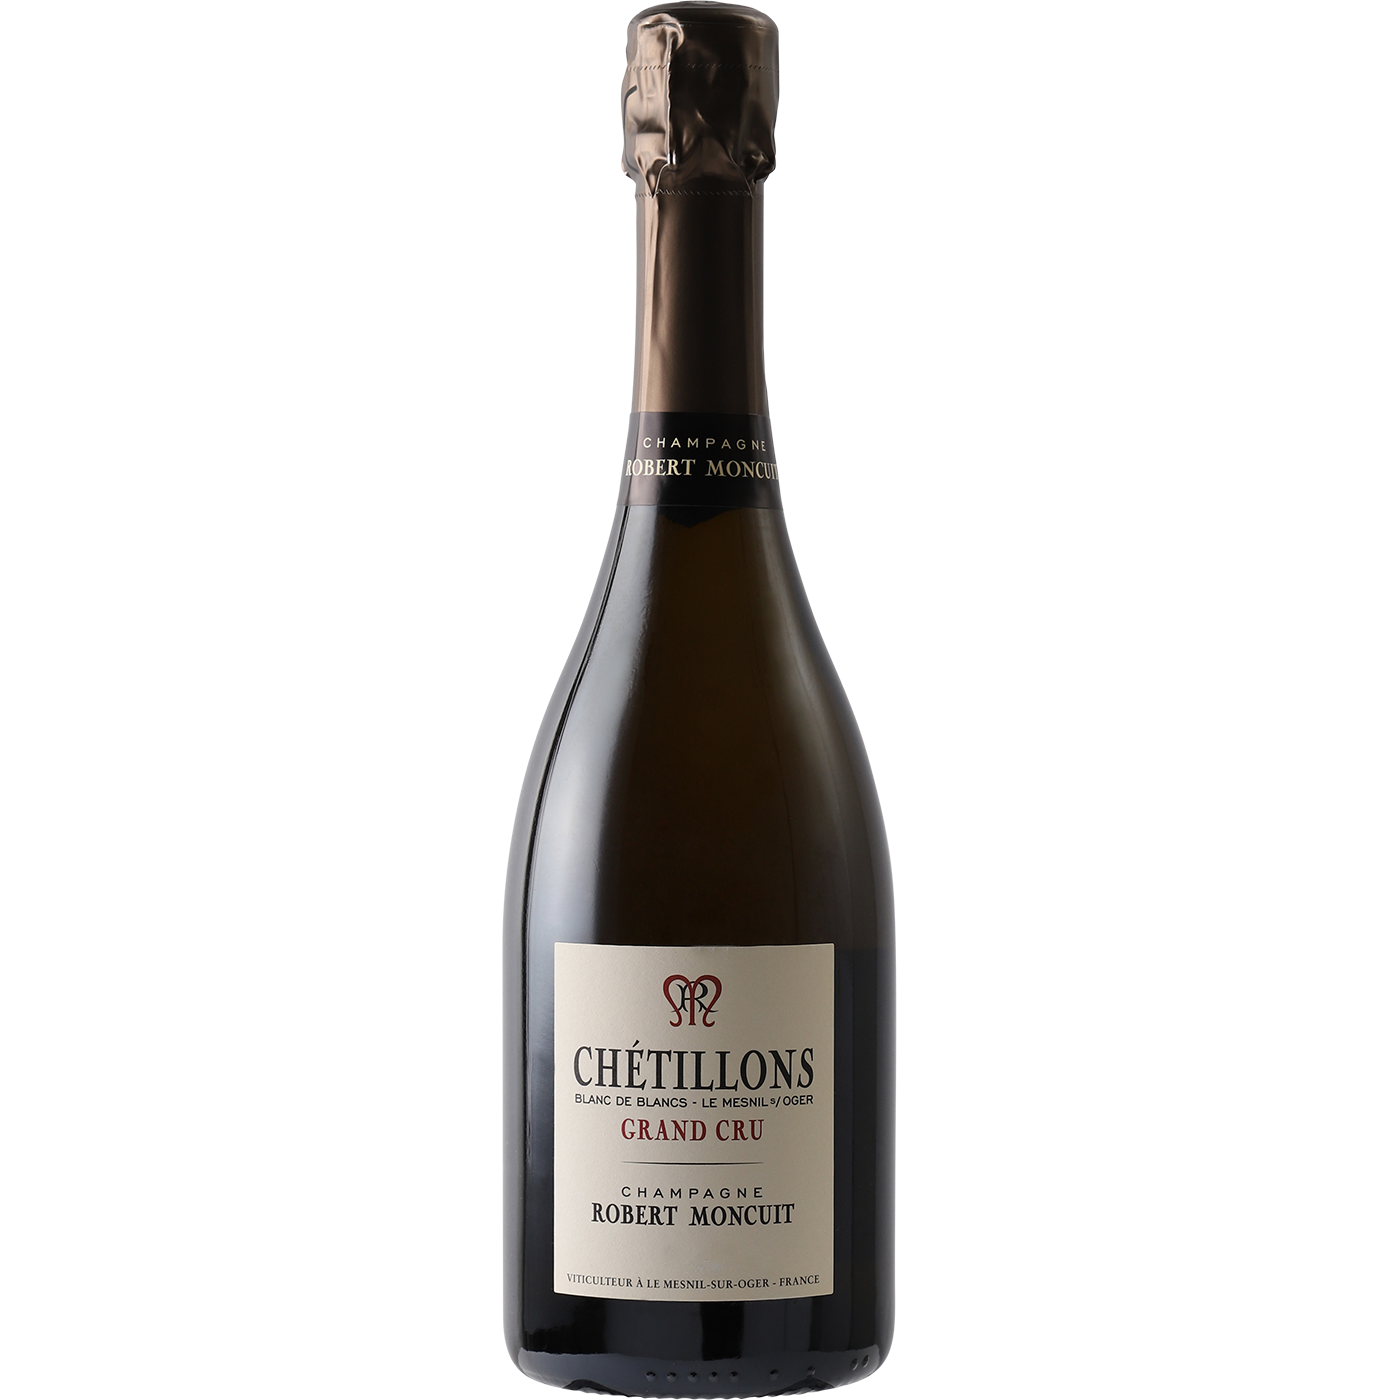 Robert Moncuit Chetillons Blanc de Blancs Brut Champagne 2013